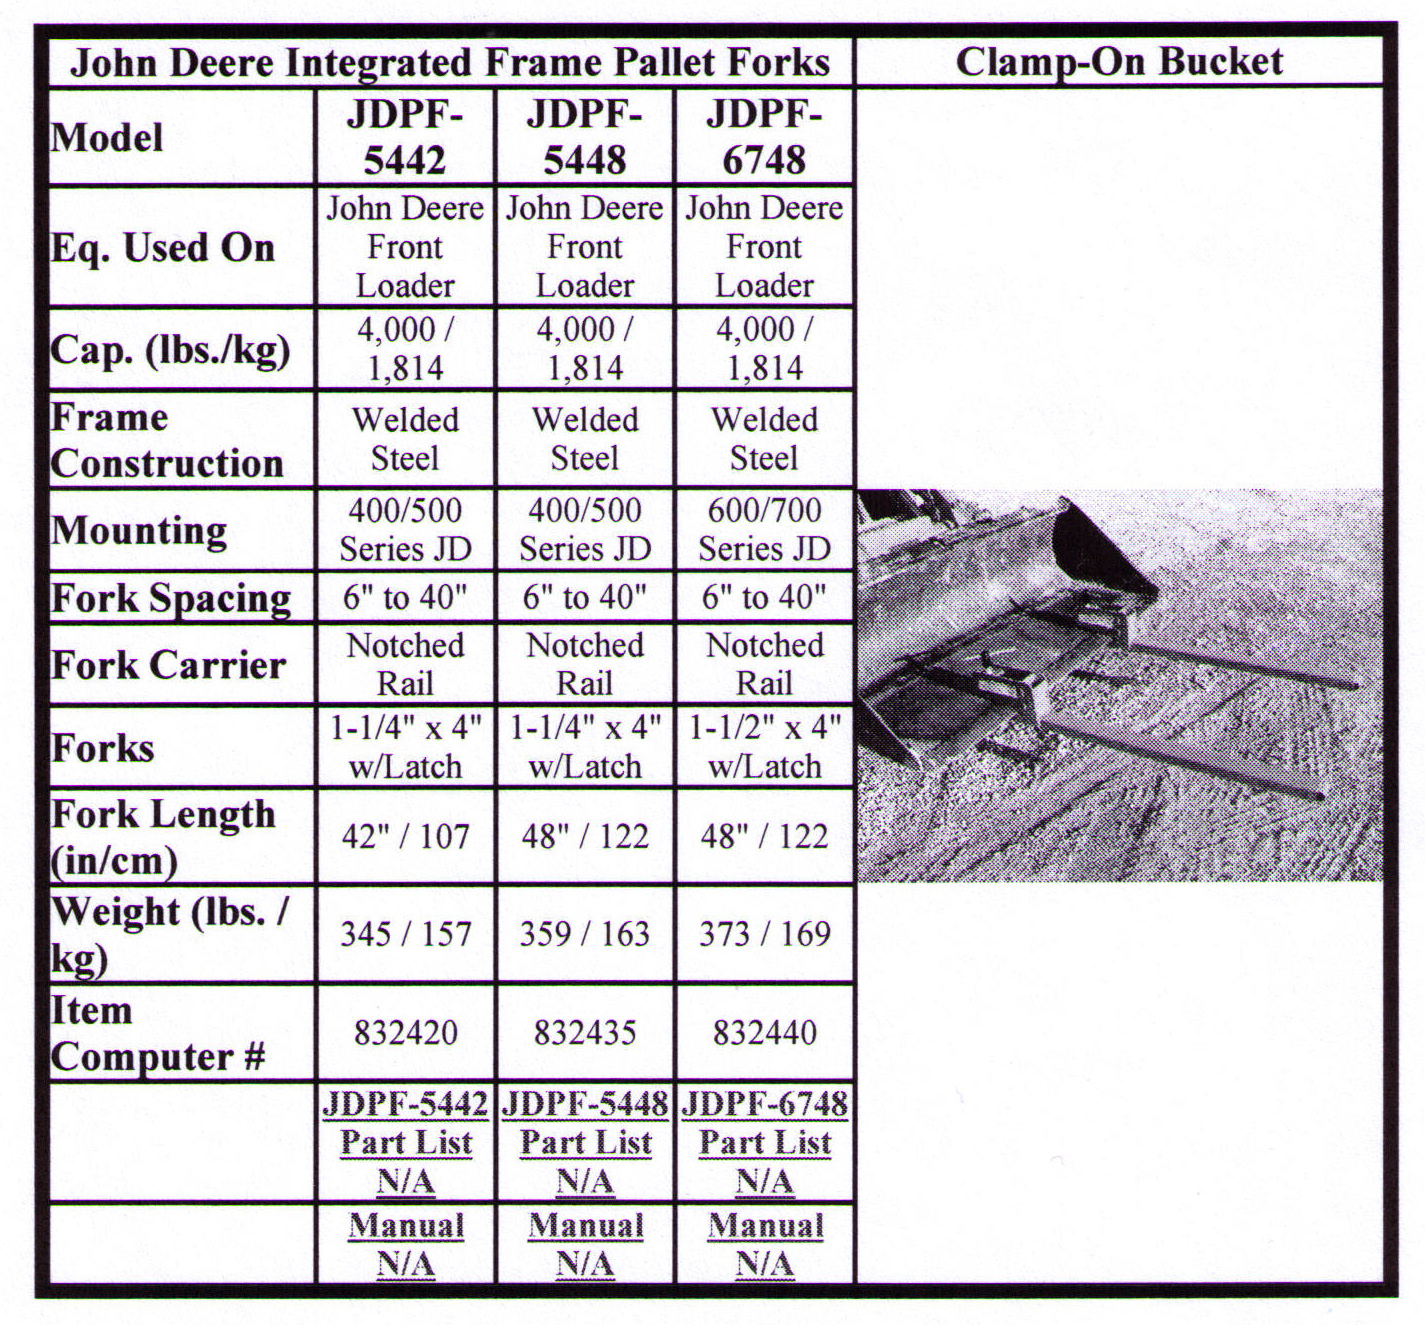 Specifications John Deere Integrated Frame Pallet Forks